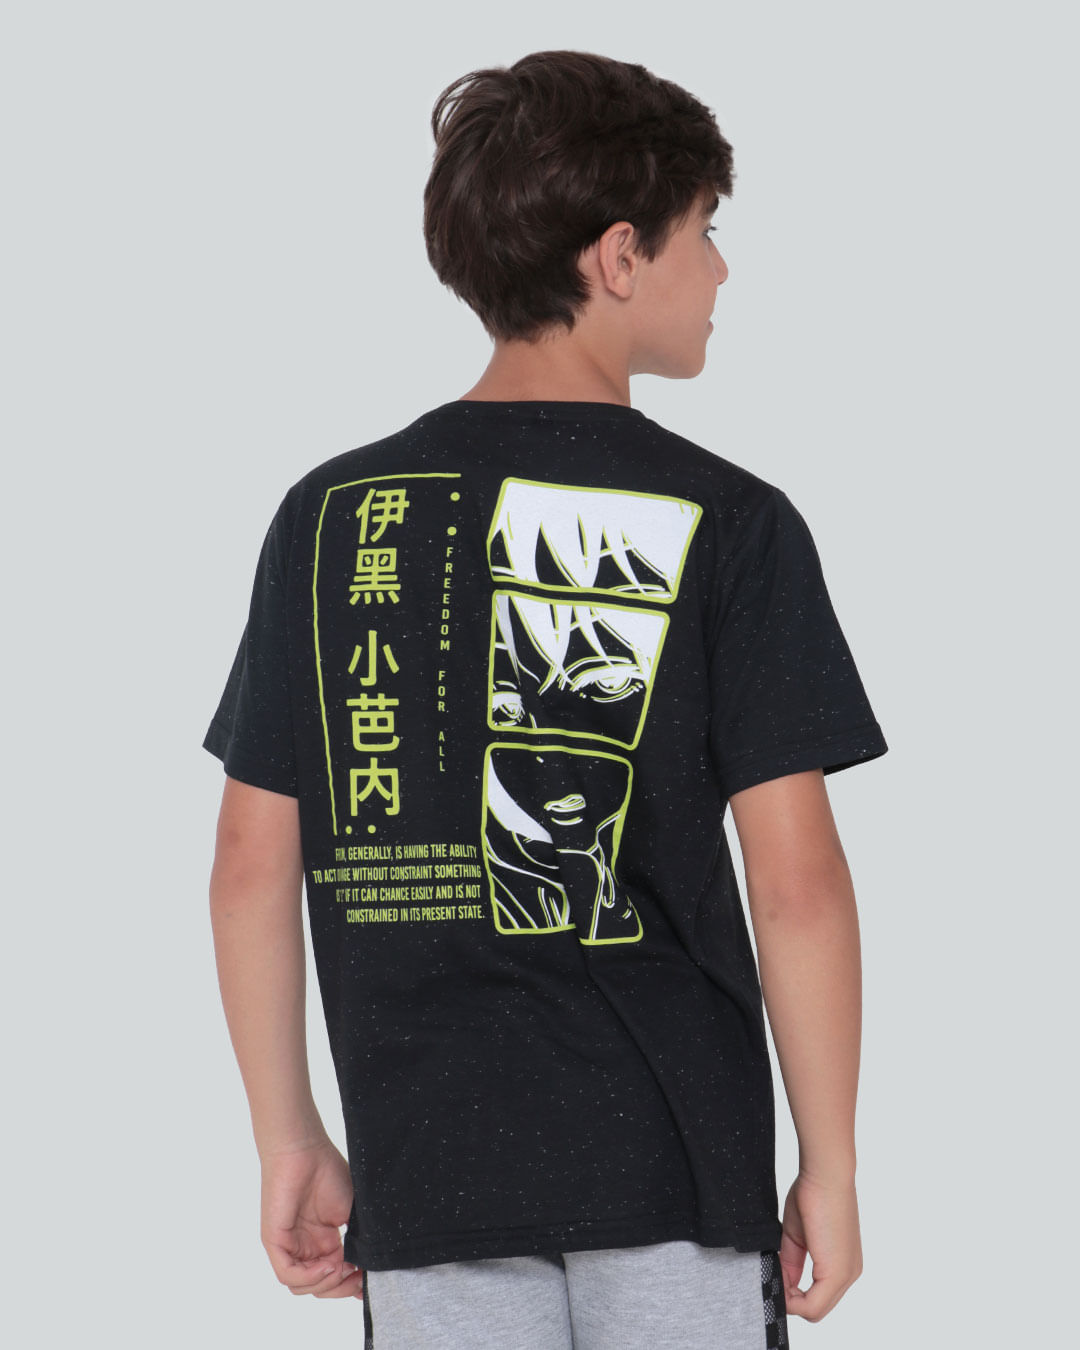 Camiseta-Juvenil-Botone-Anime-Preta